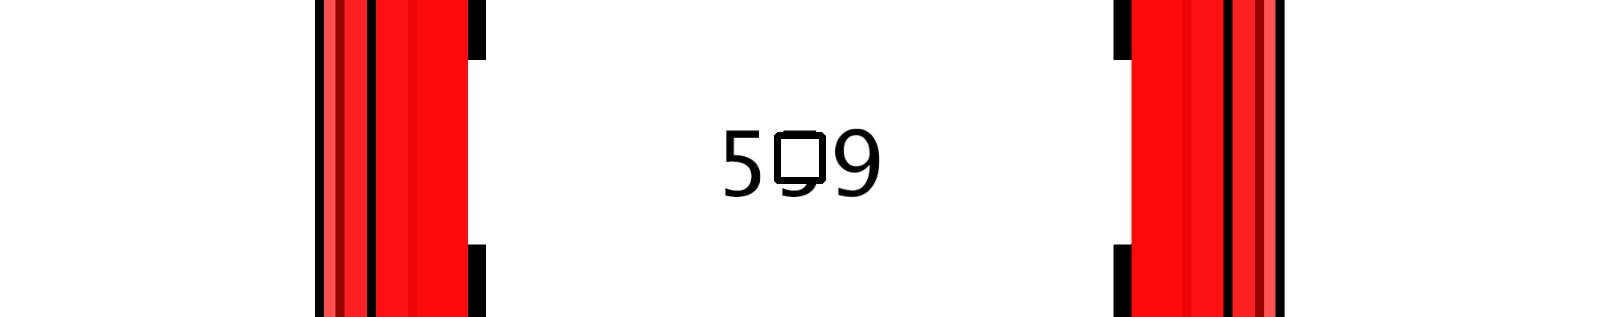 55555